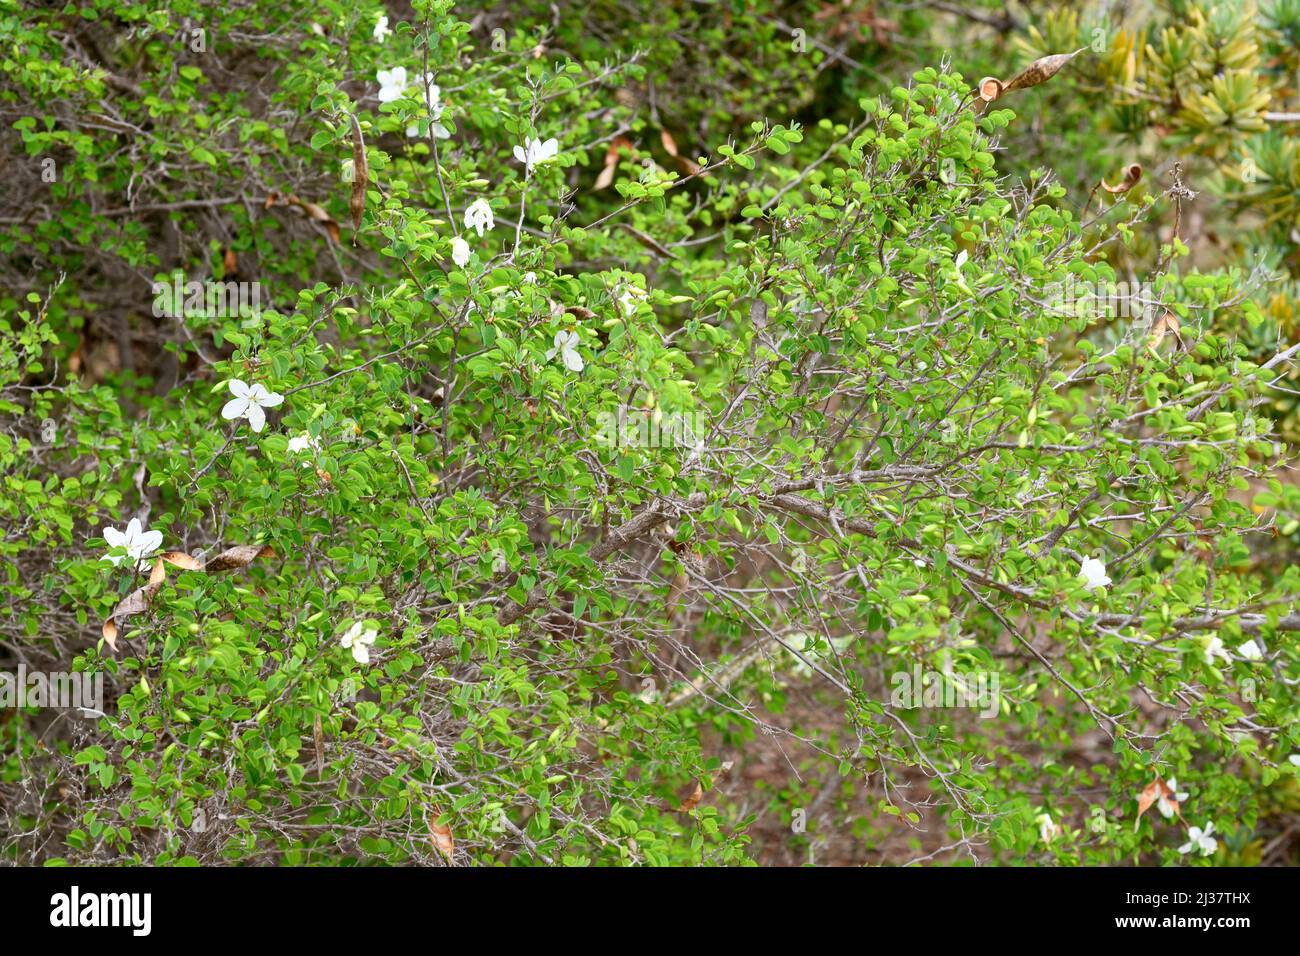 Natal bahuinia (Bahuinia natalensis) est un arbuste à feuilles persistantes originaire d'Afrique du Sud. Spécimen en fleurs. Banque D'Images